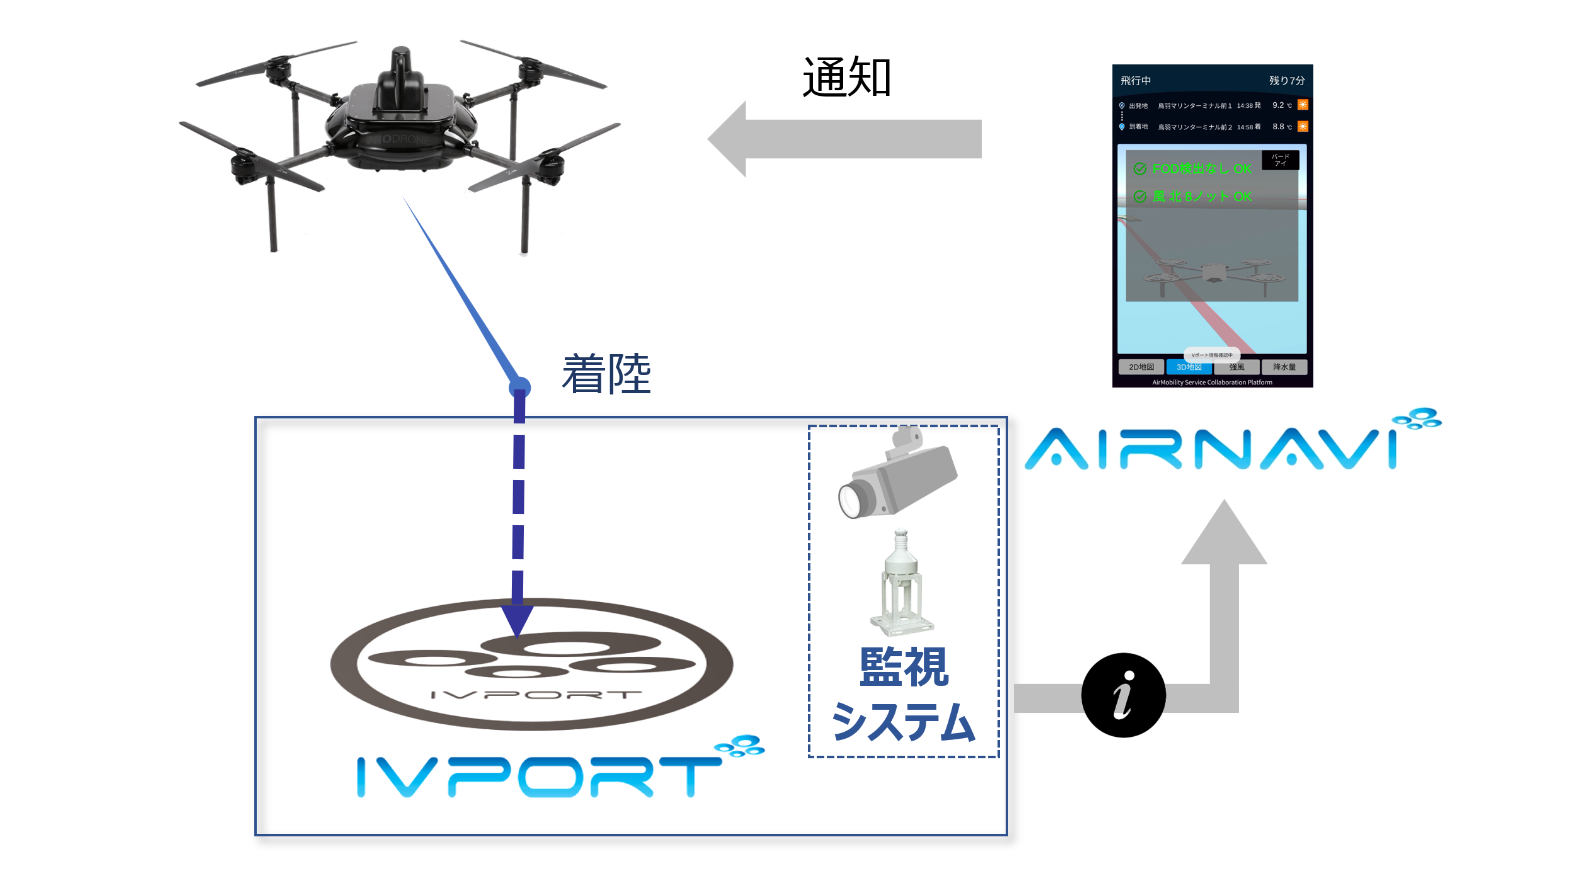 三重県、空⾶ぶクルマのナビゲーションシステム「AirNavi」と離着陸場システム「IVport」の実証実験を実施[ニュース]